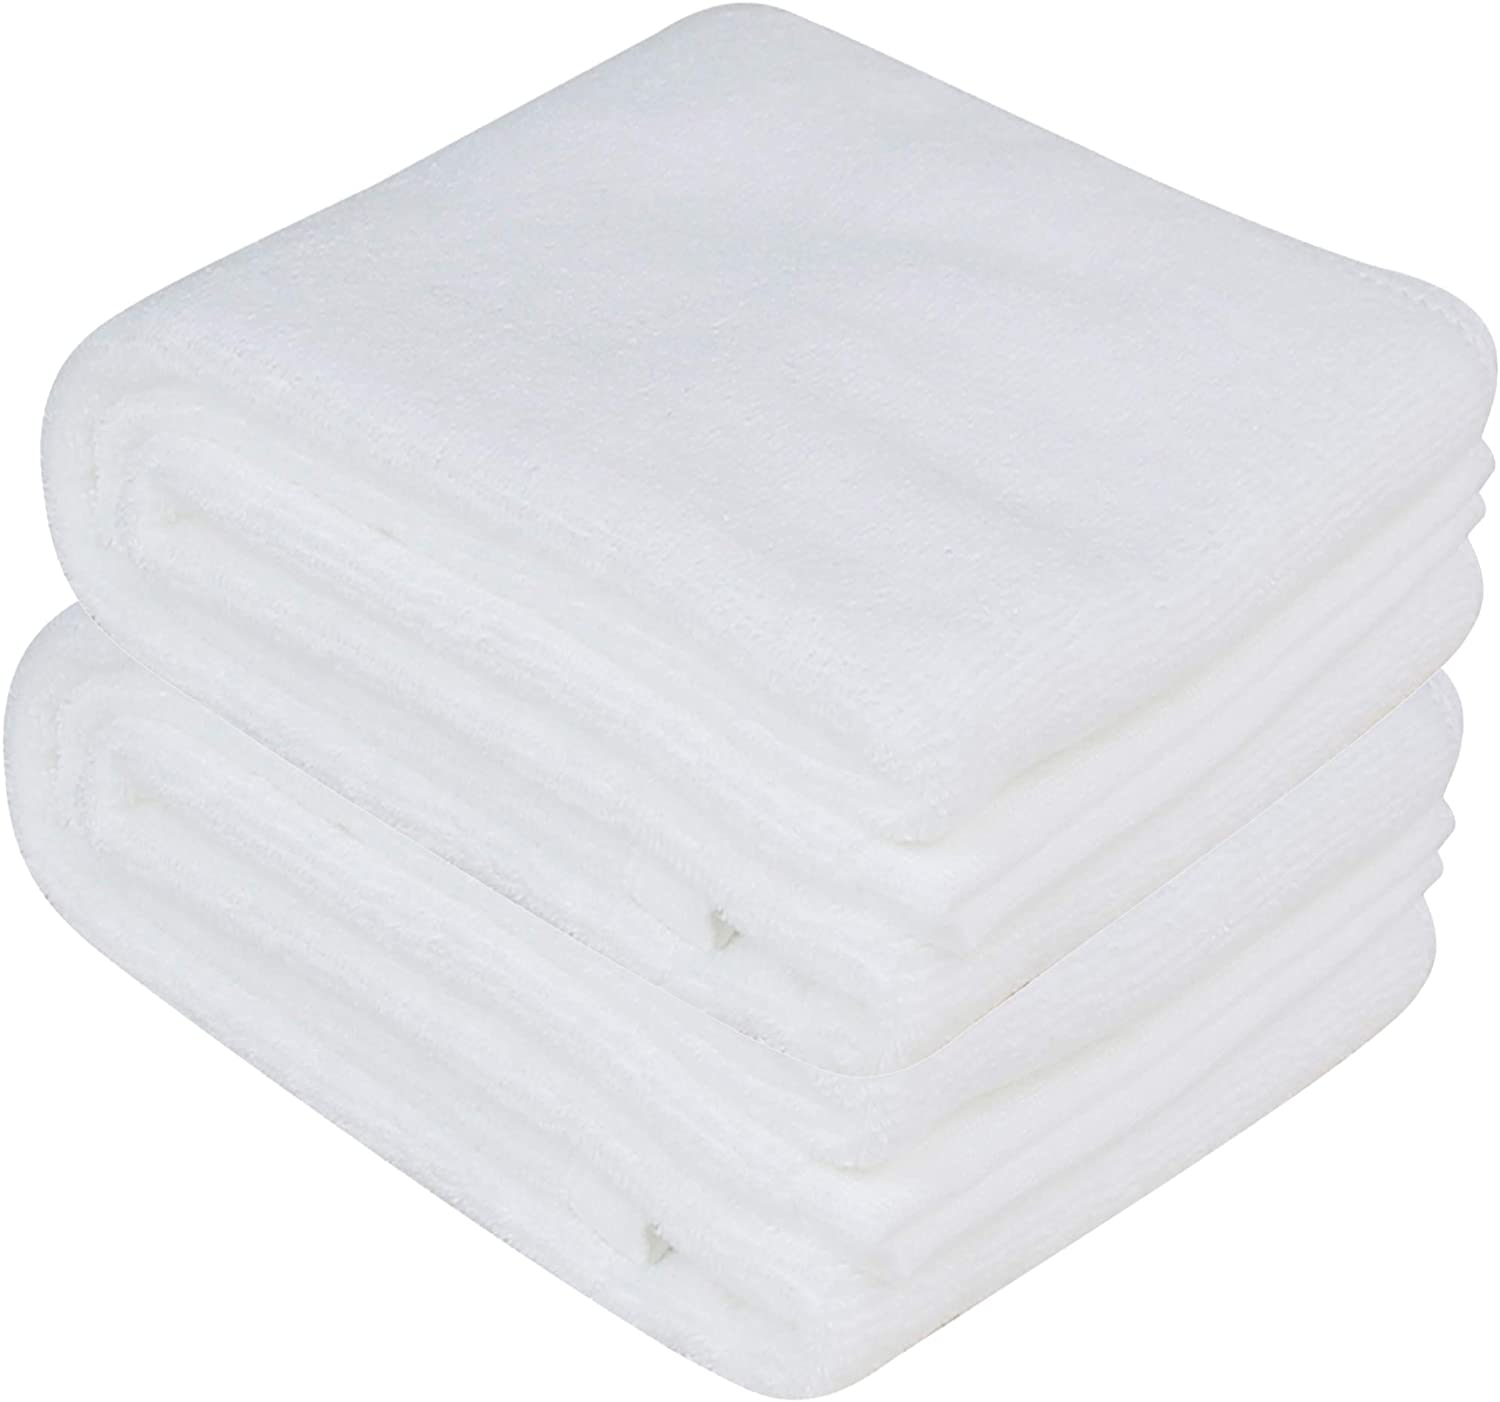  Toalla de gimnasio para sudar, 100% algodón orgánico, toalla de  entrenamiento suave y absorbente para gimnasio (31.5 x 15.75 pulgadas),  toalla deportiva con infusión de plata, toalla de yoga y 